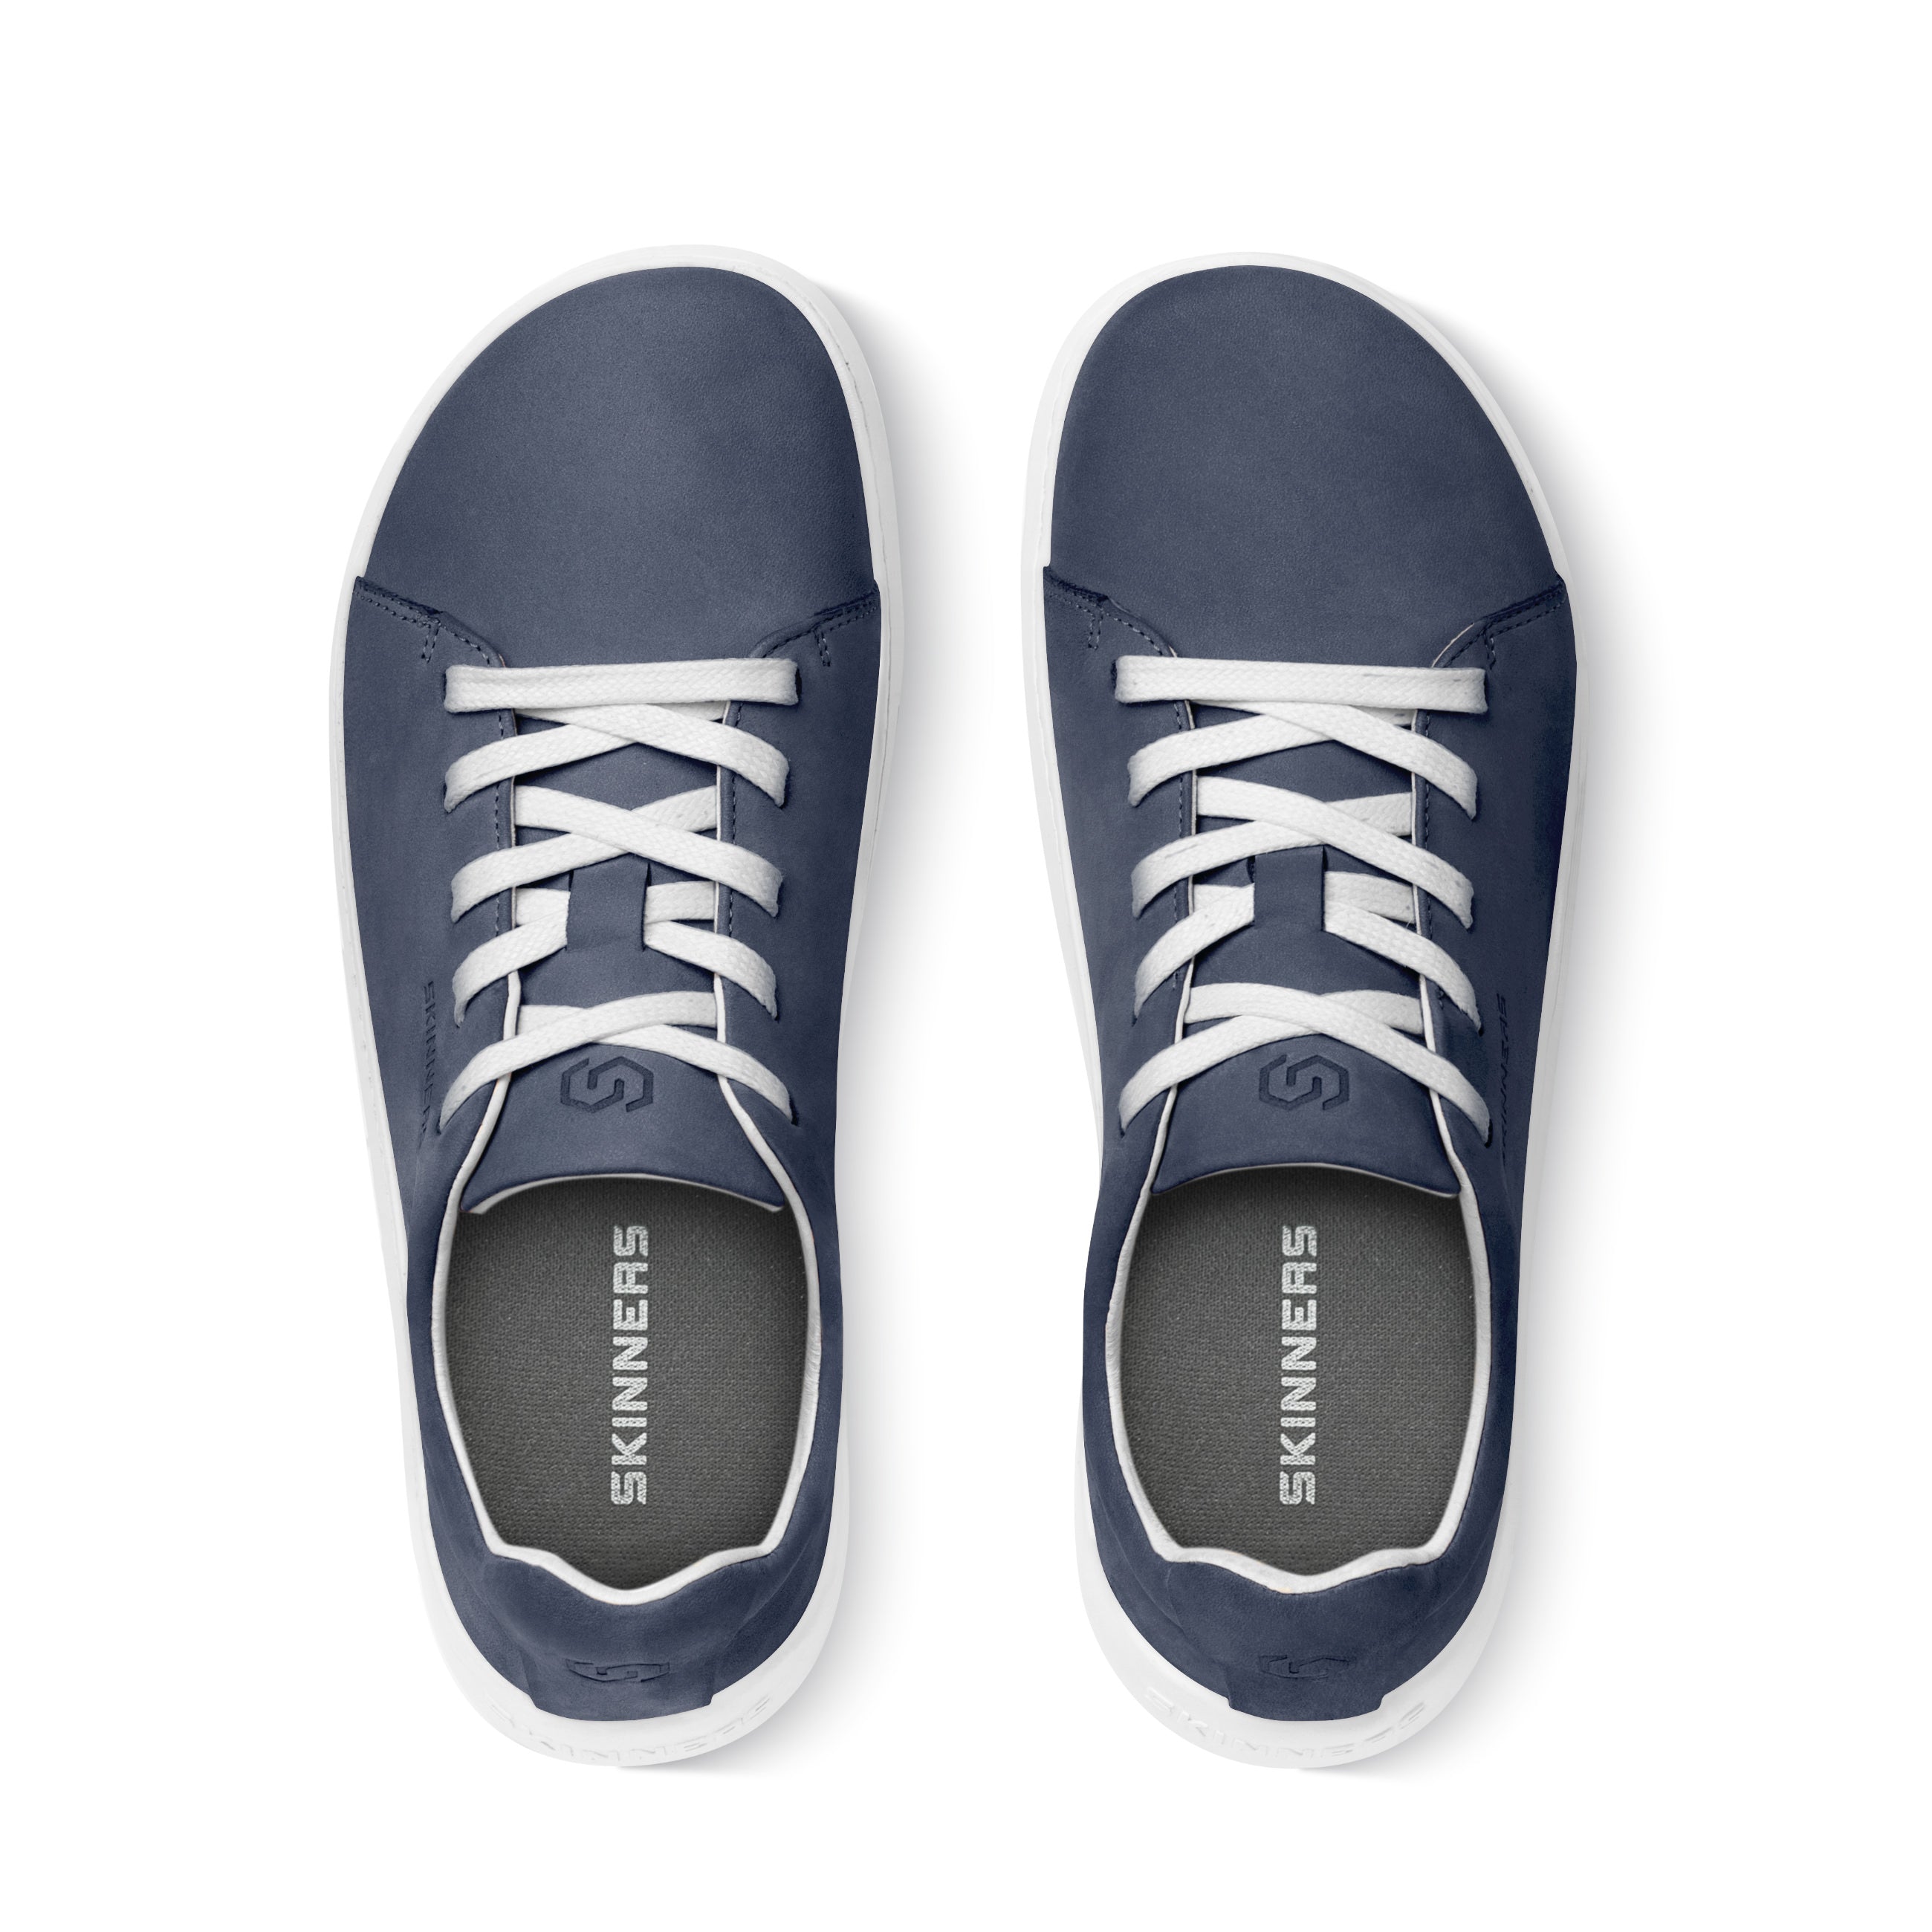 Mærkbare Walker barfods sneakers til kvinder og mænd i farven navy / white, top